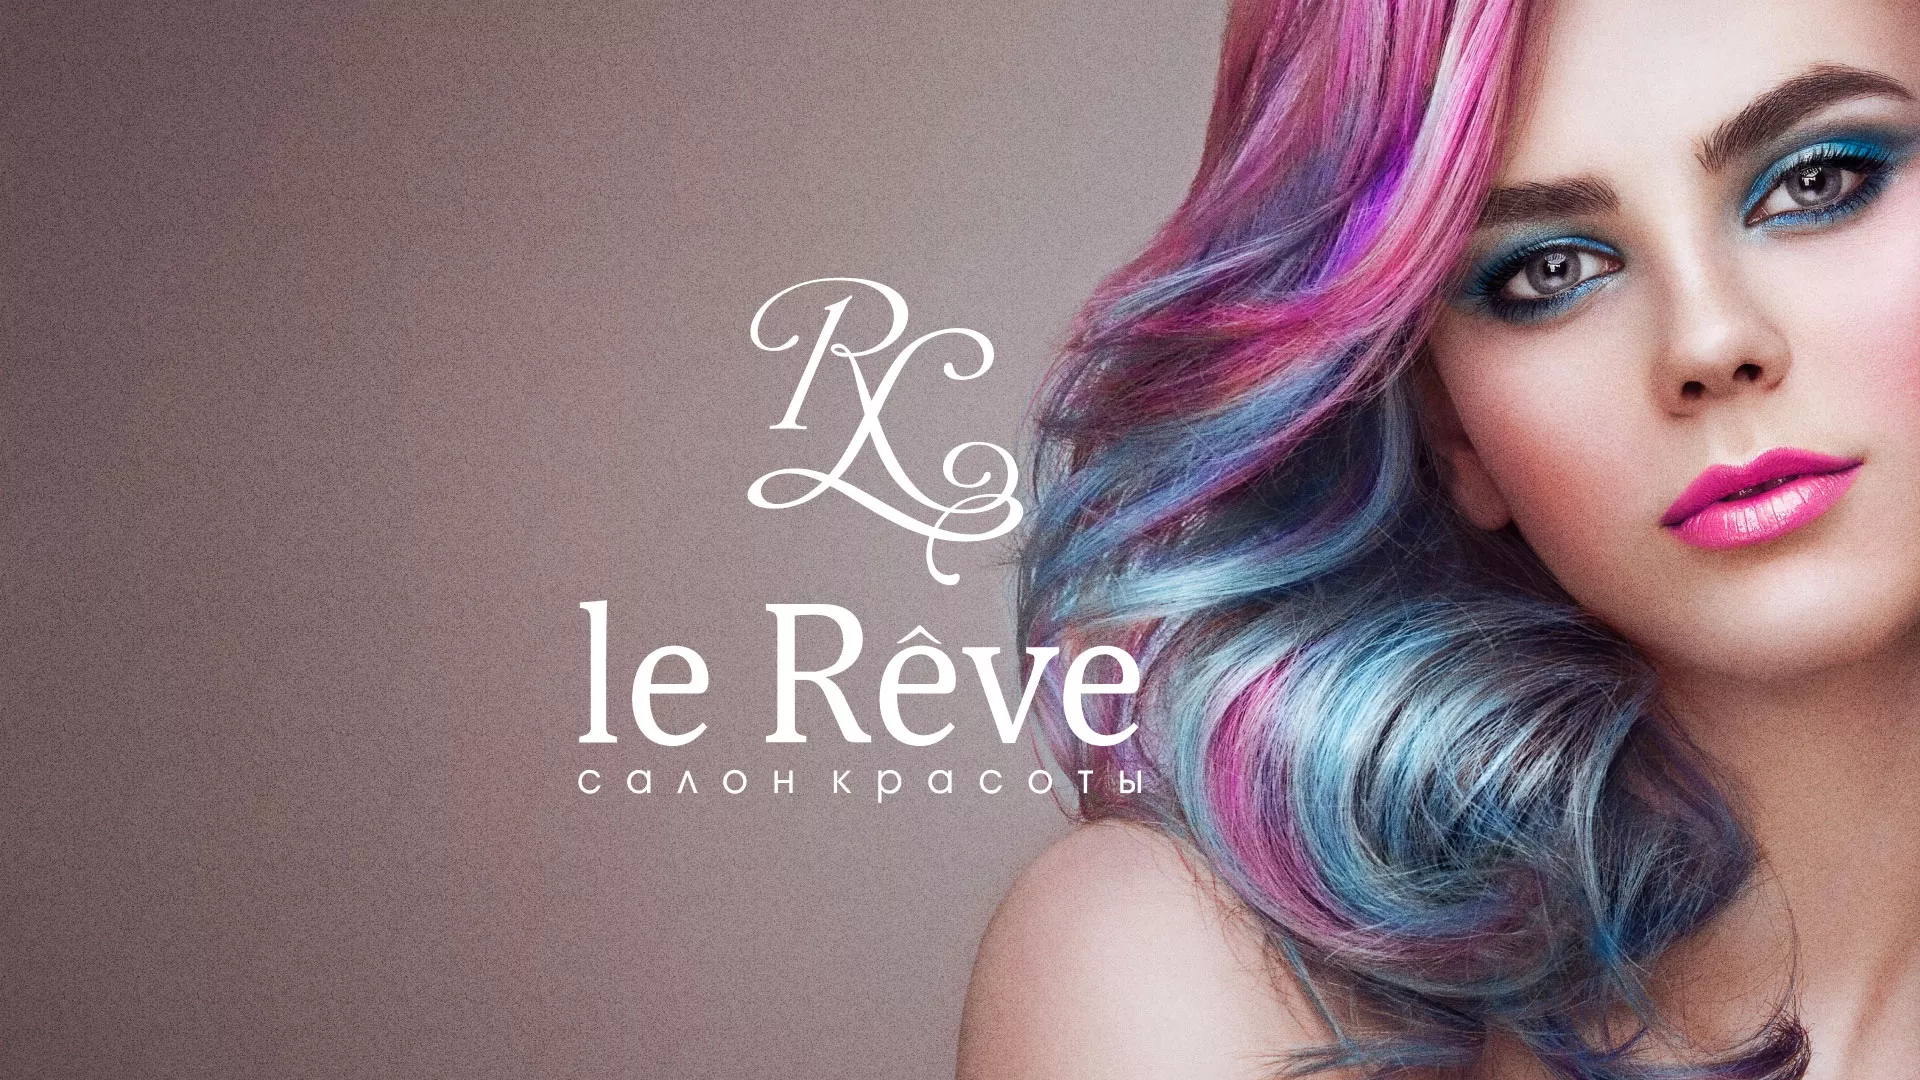 Создание сайта для салона красоты «Le Reve» в Чехове